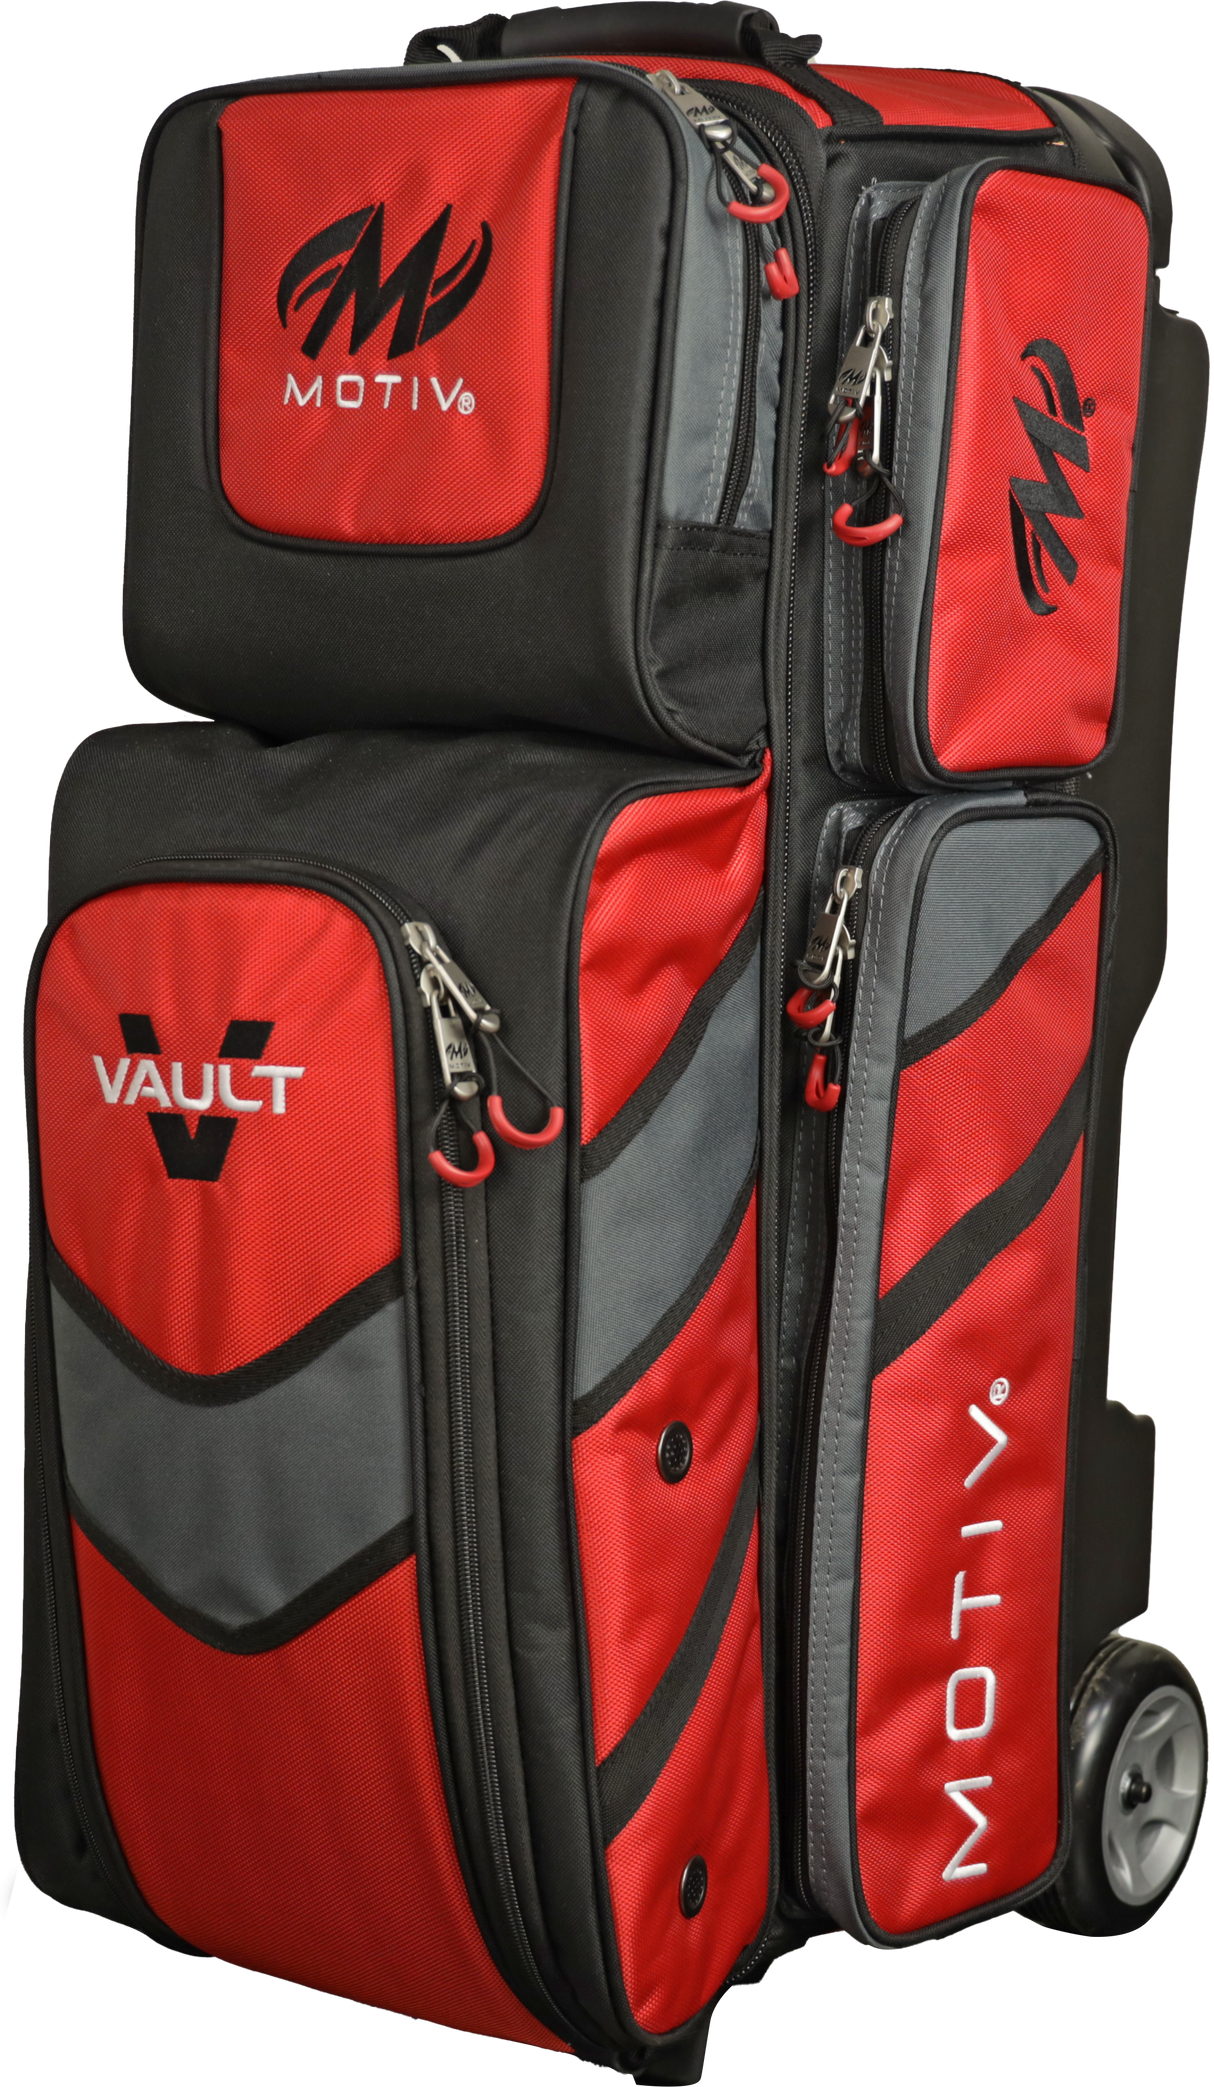 Motiv Vault 3 Ball Triple Roller Fire Red Bowling Bag suitcase league tournament play sale discount coupon online pba tour